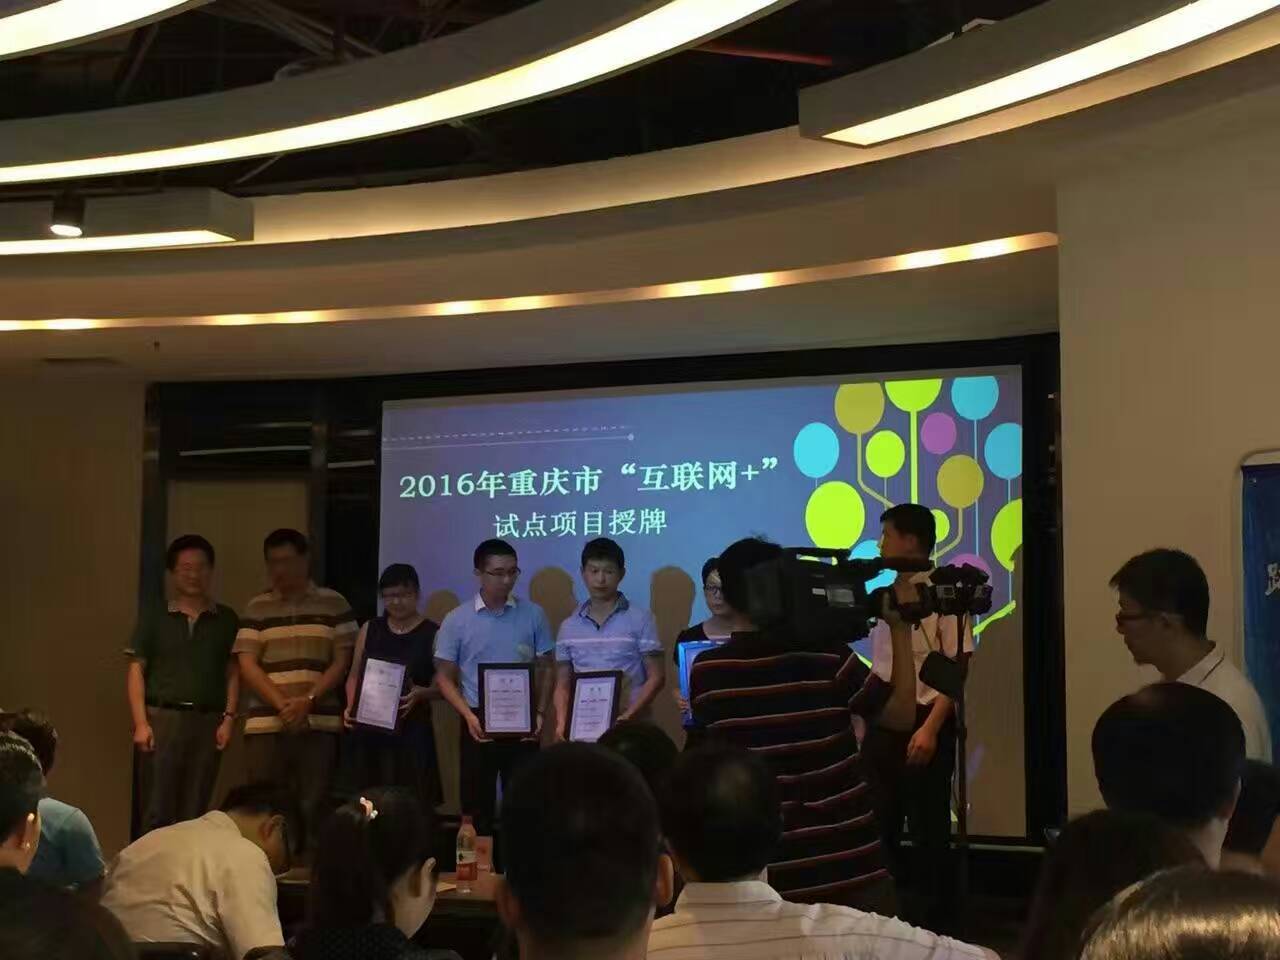 禾益科技參加重慶市“互聯網+”項目授牌